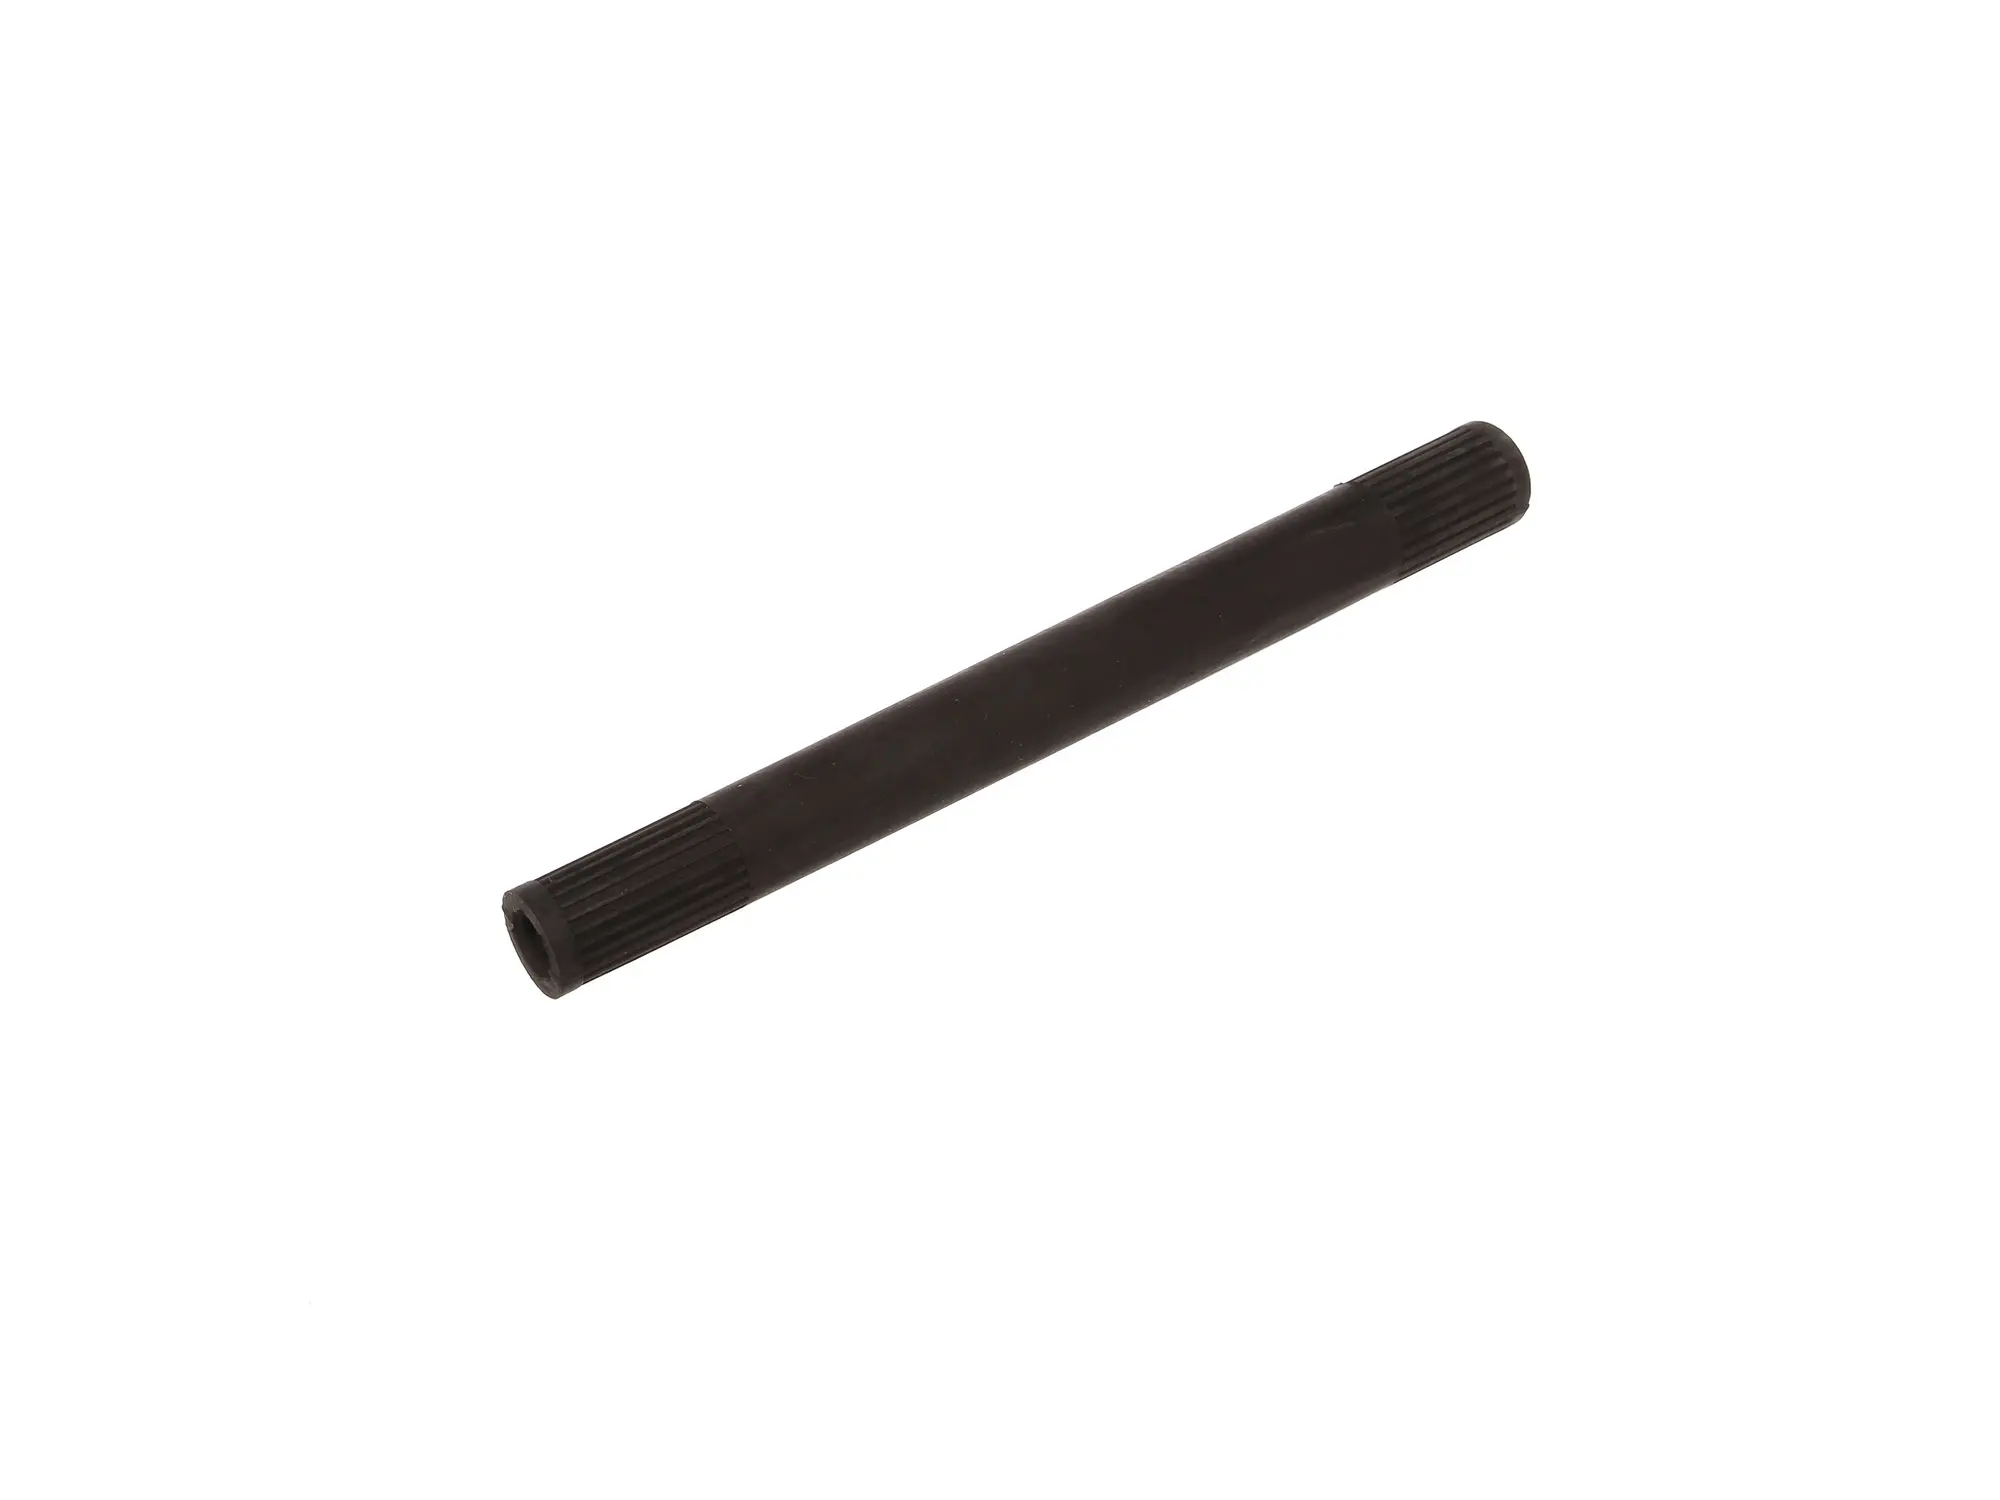 Zündkerzen-Montagehilfe - flexible Einschraubhilfe aus Gummi - Spezialwerkzeug - für Zündkerzen-Schaft/ Isolator mit Ø12, 14 und 18mm-Durchmesser, Art.-Nr.: 10064395 - Bild 1